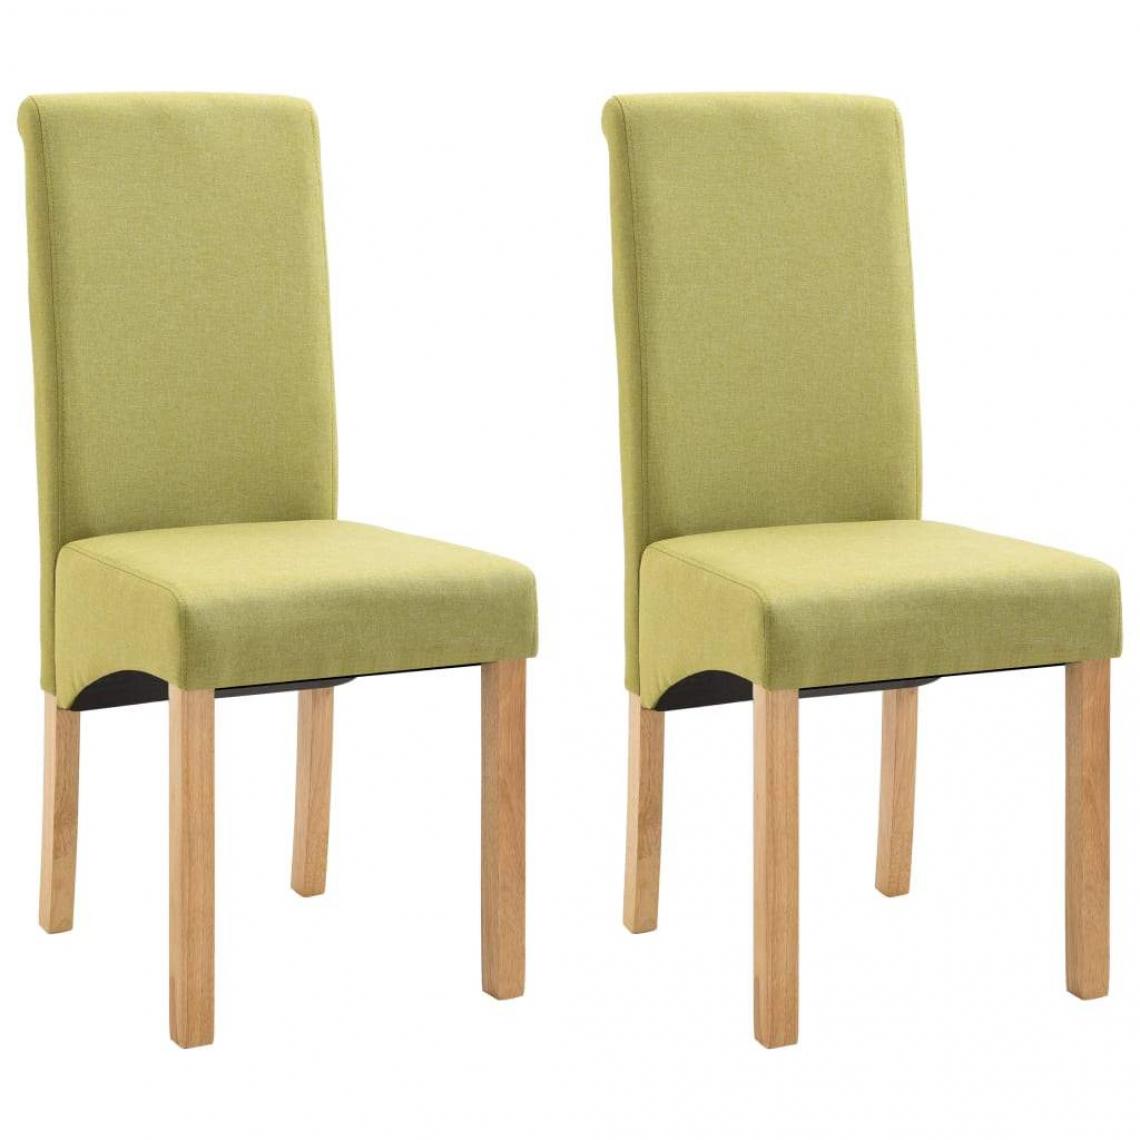 Decoshop26 - Lot de 2 chaises de salle à manger cuisine design moderne tissu vert CDS021114 - Chaises